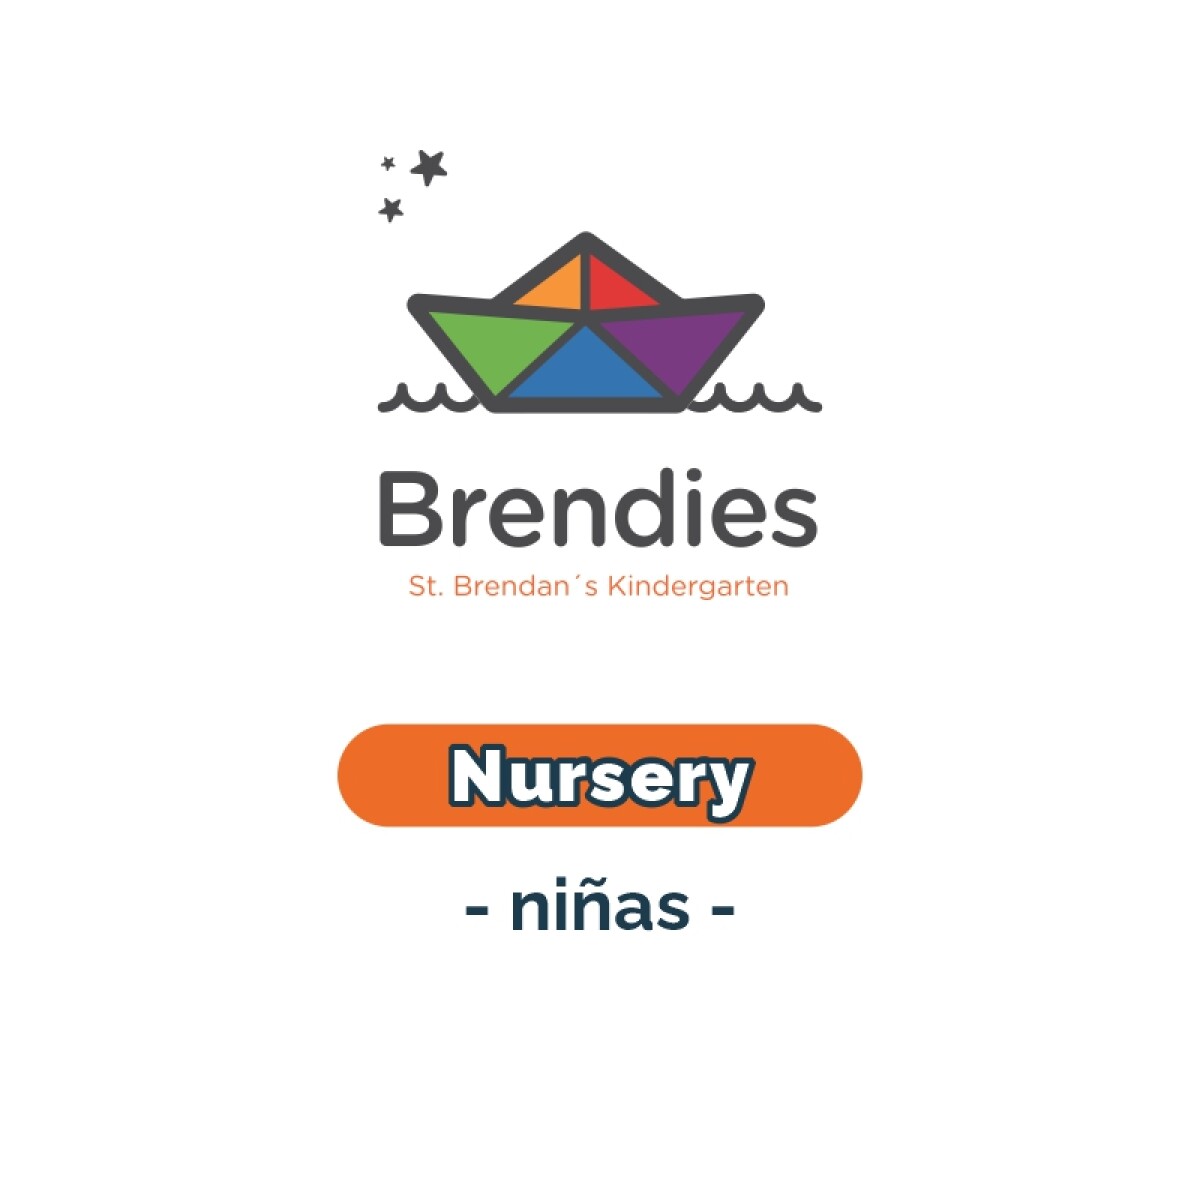 Lista de materiales - Brendies Nursery niñas SB 